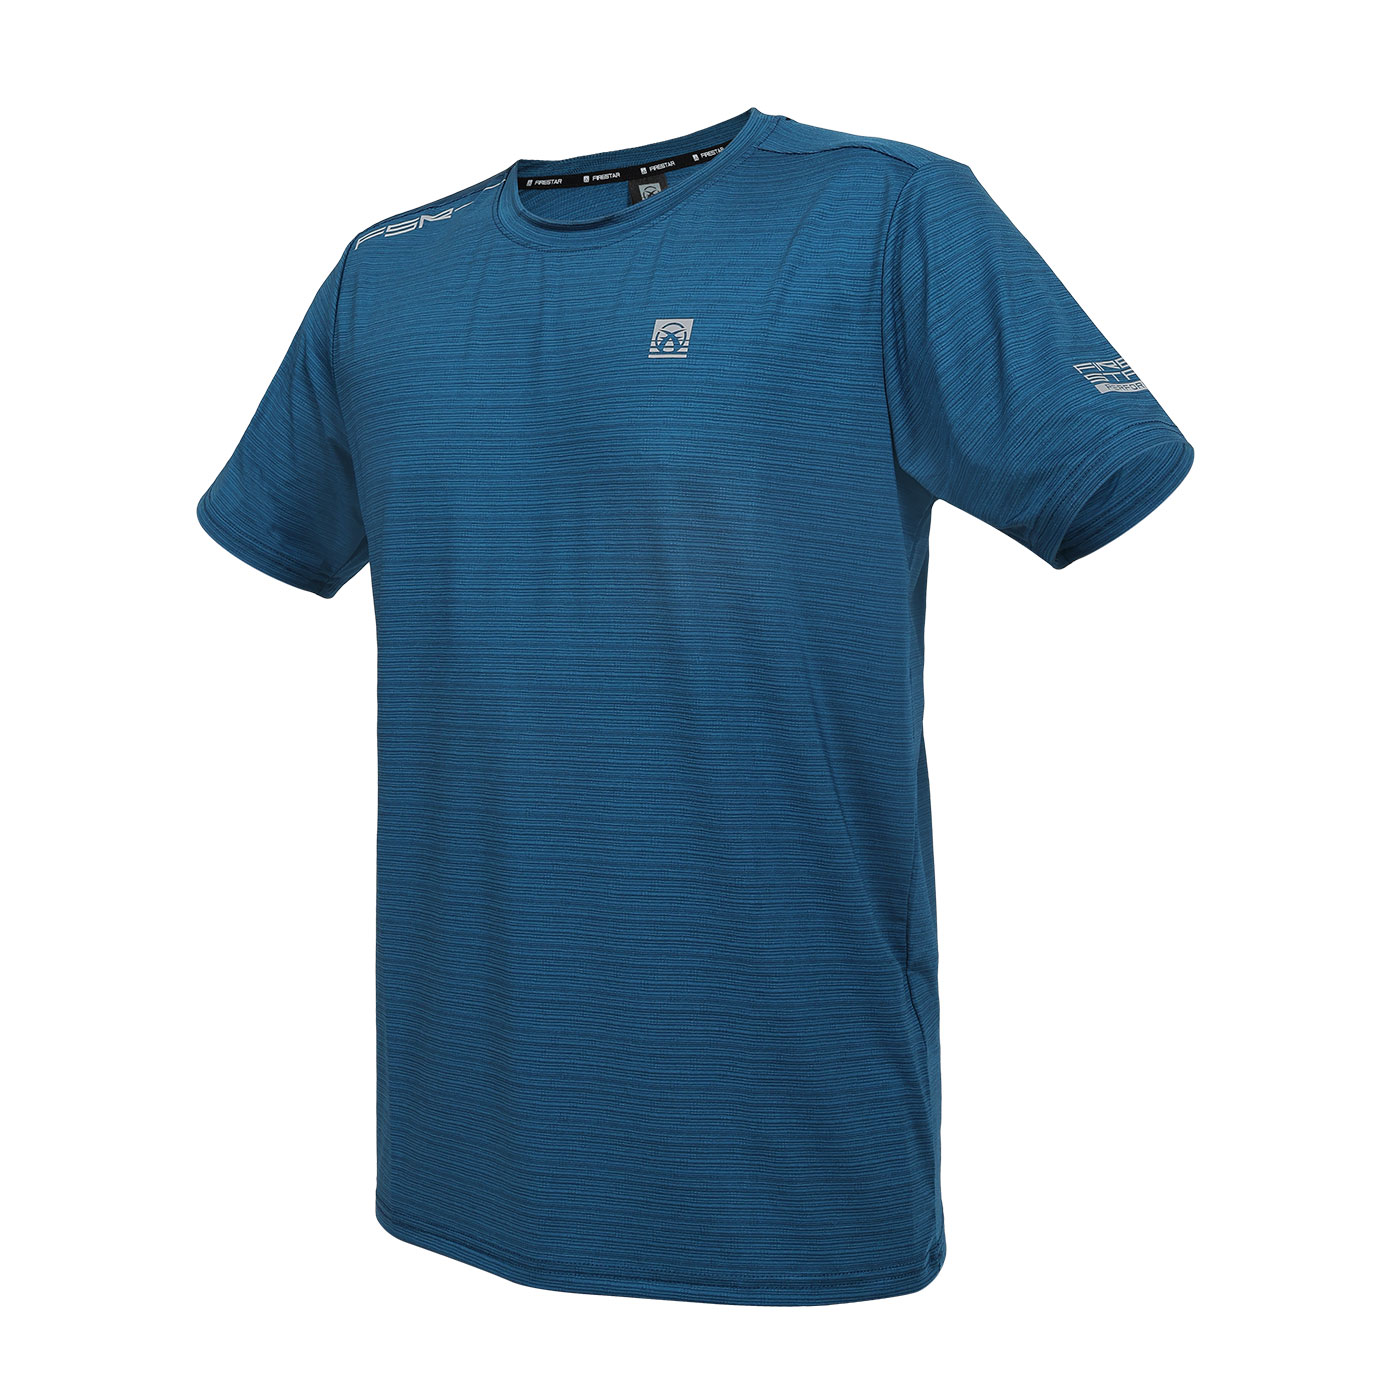 FIRESTAR 男款冰感圓領短袖T恤  D4630-98 - 珊瑚藍條紋